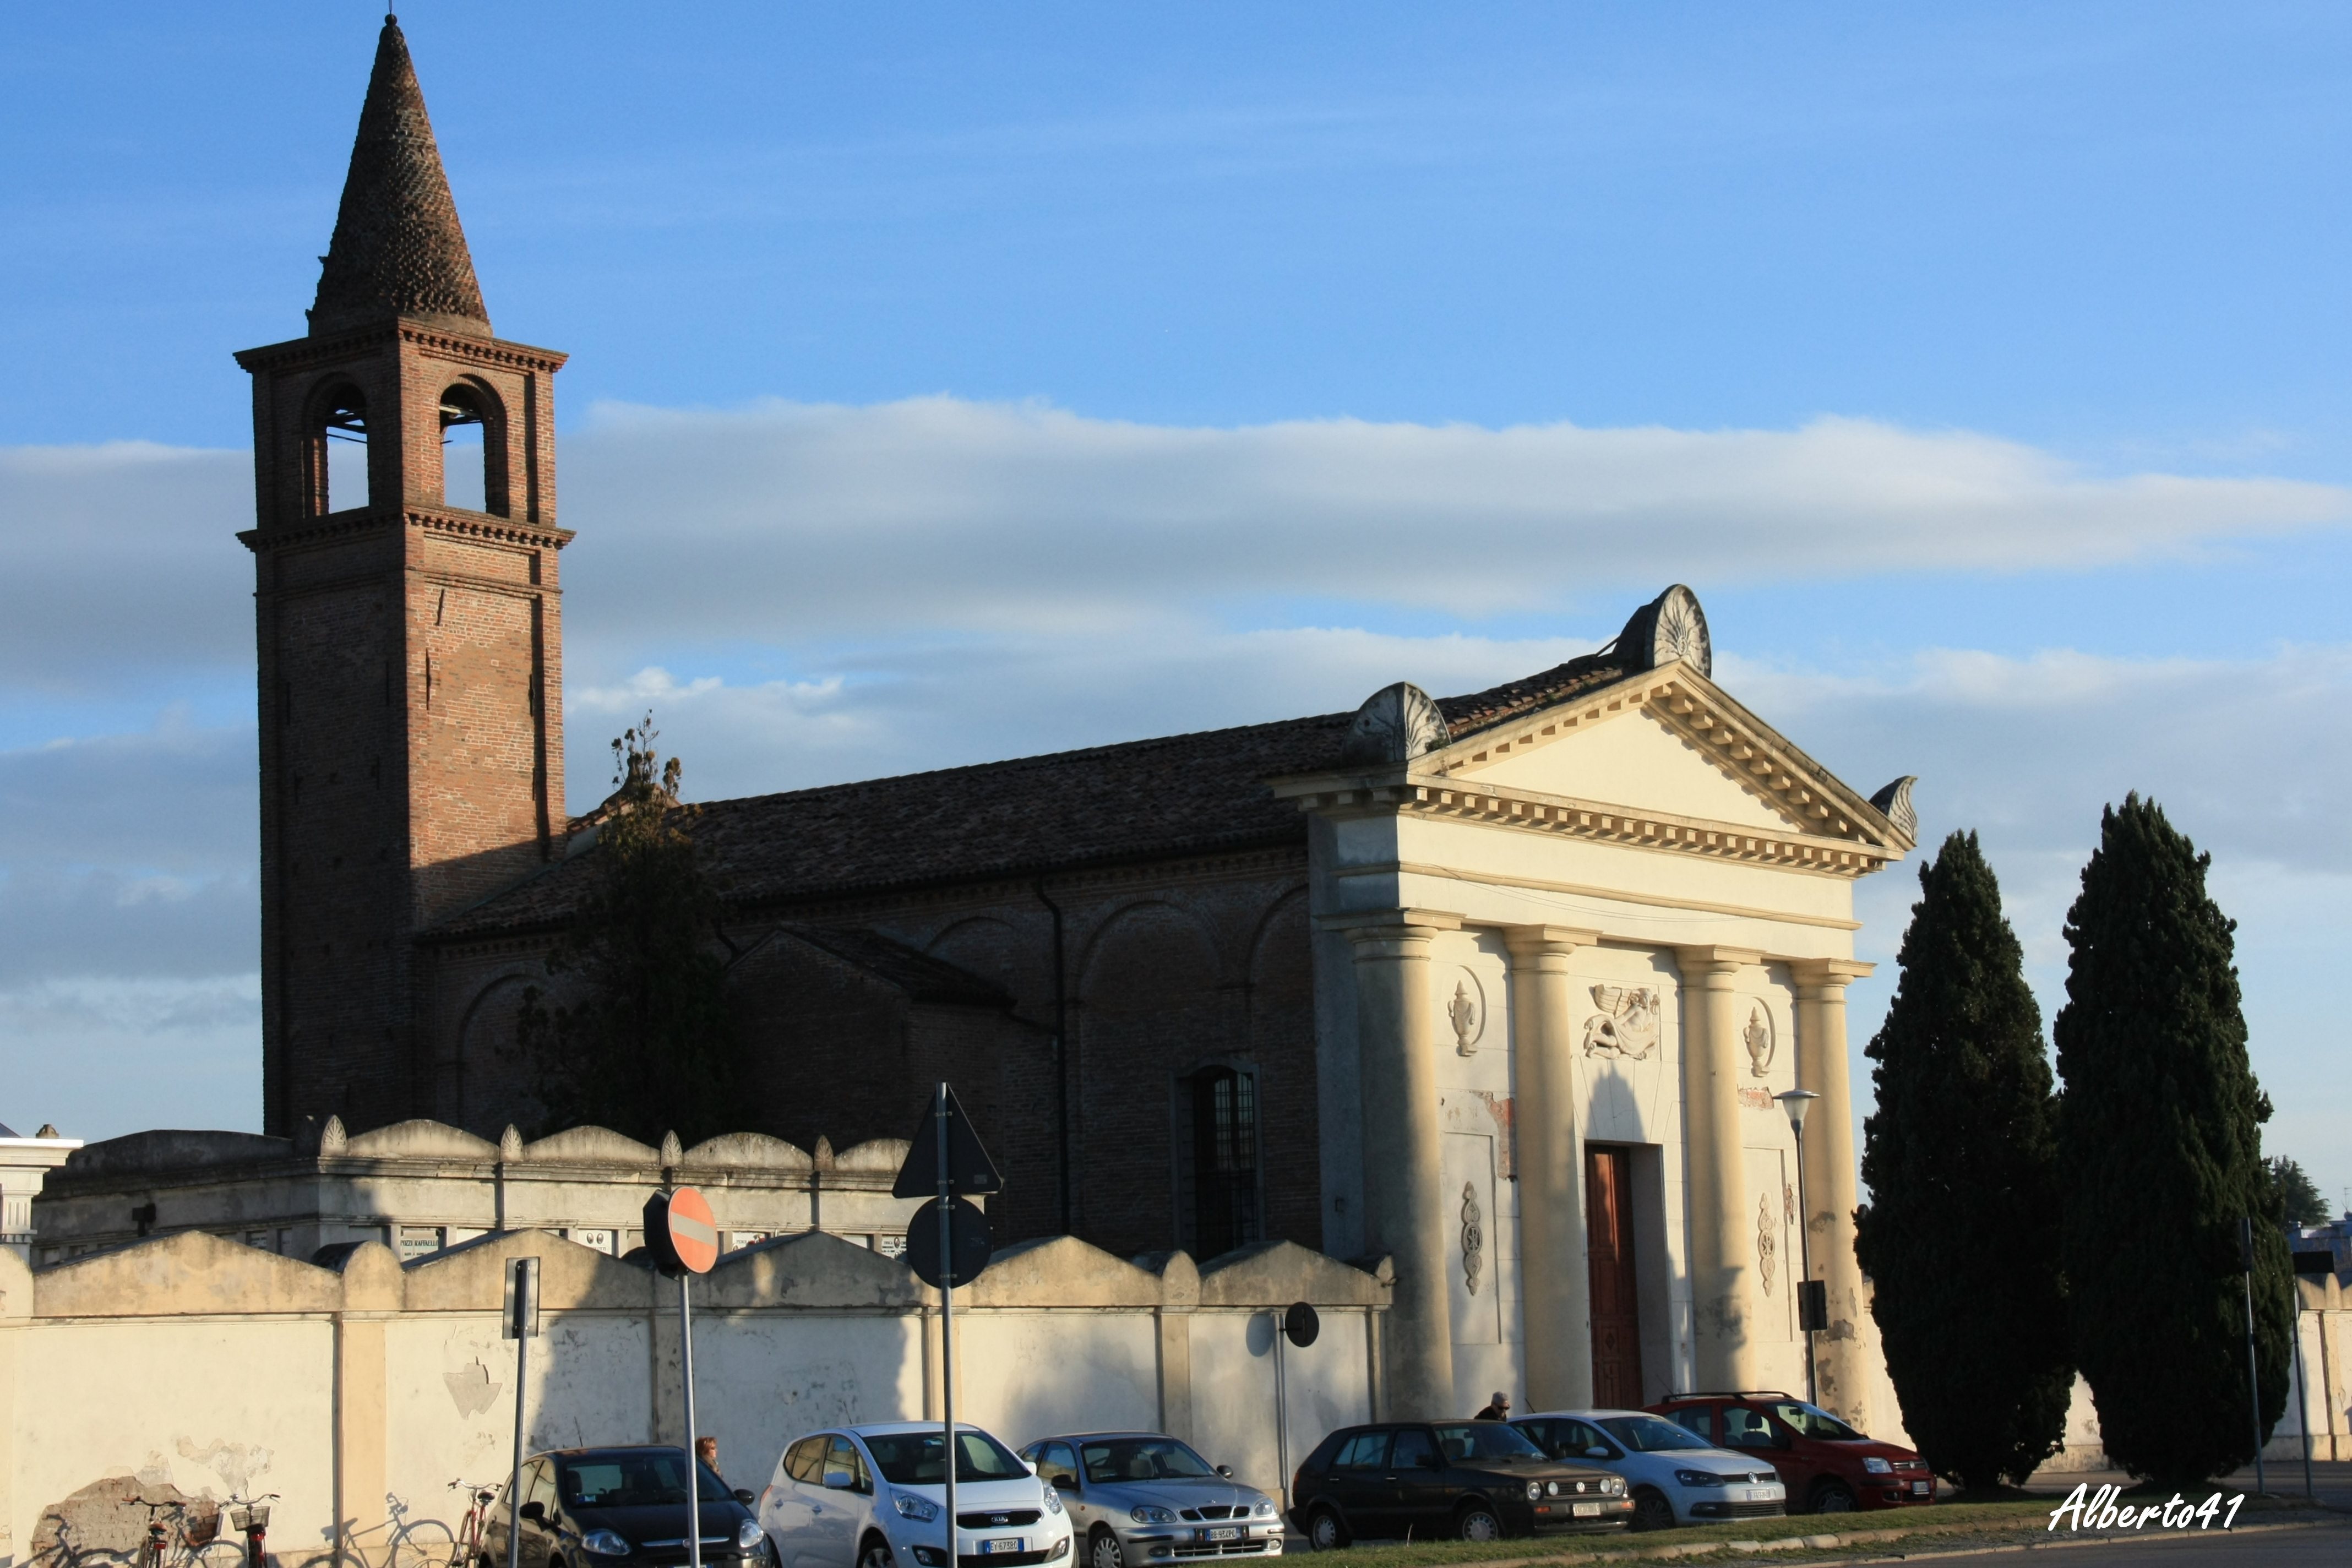 Chiesa Santa Maria Dei Sabbioni 1